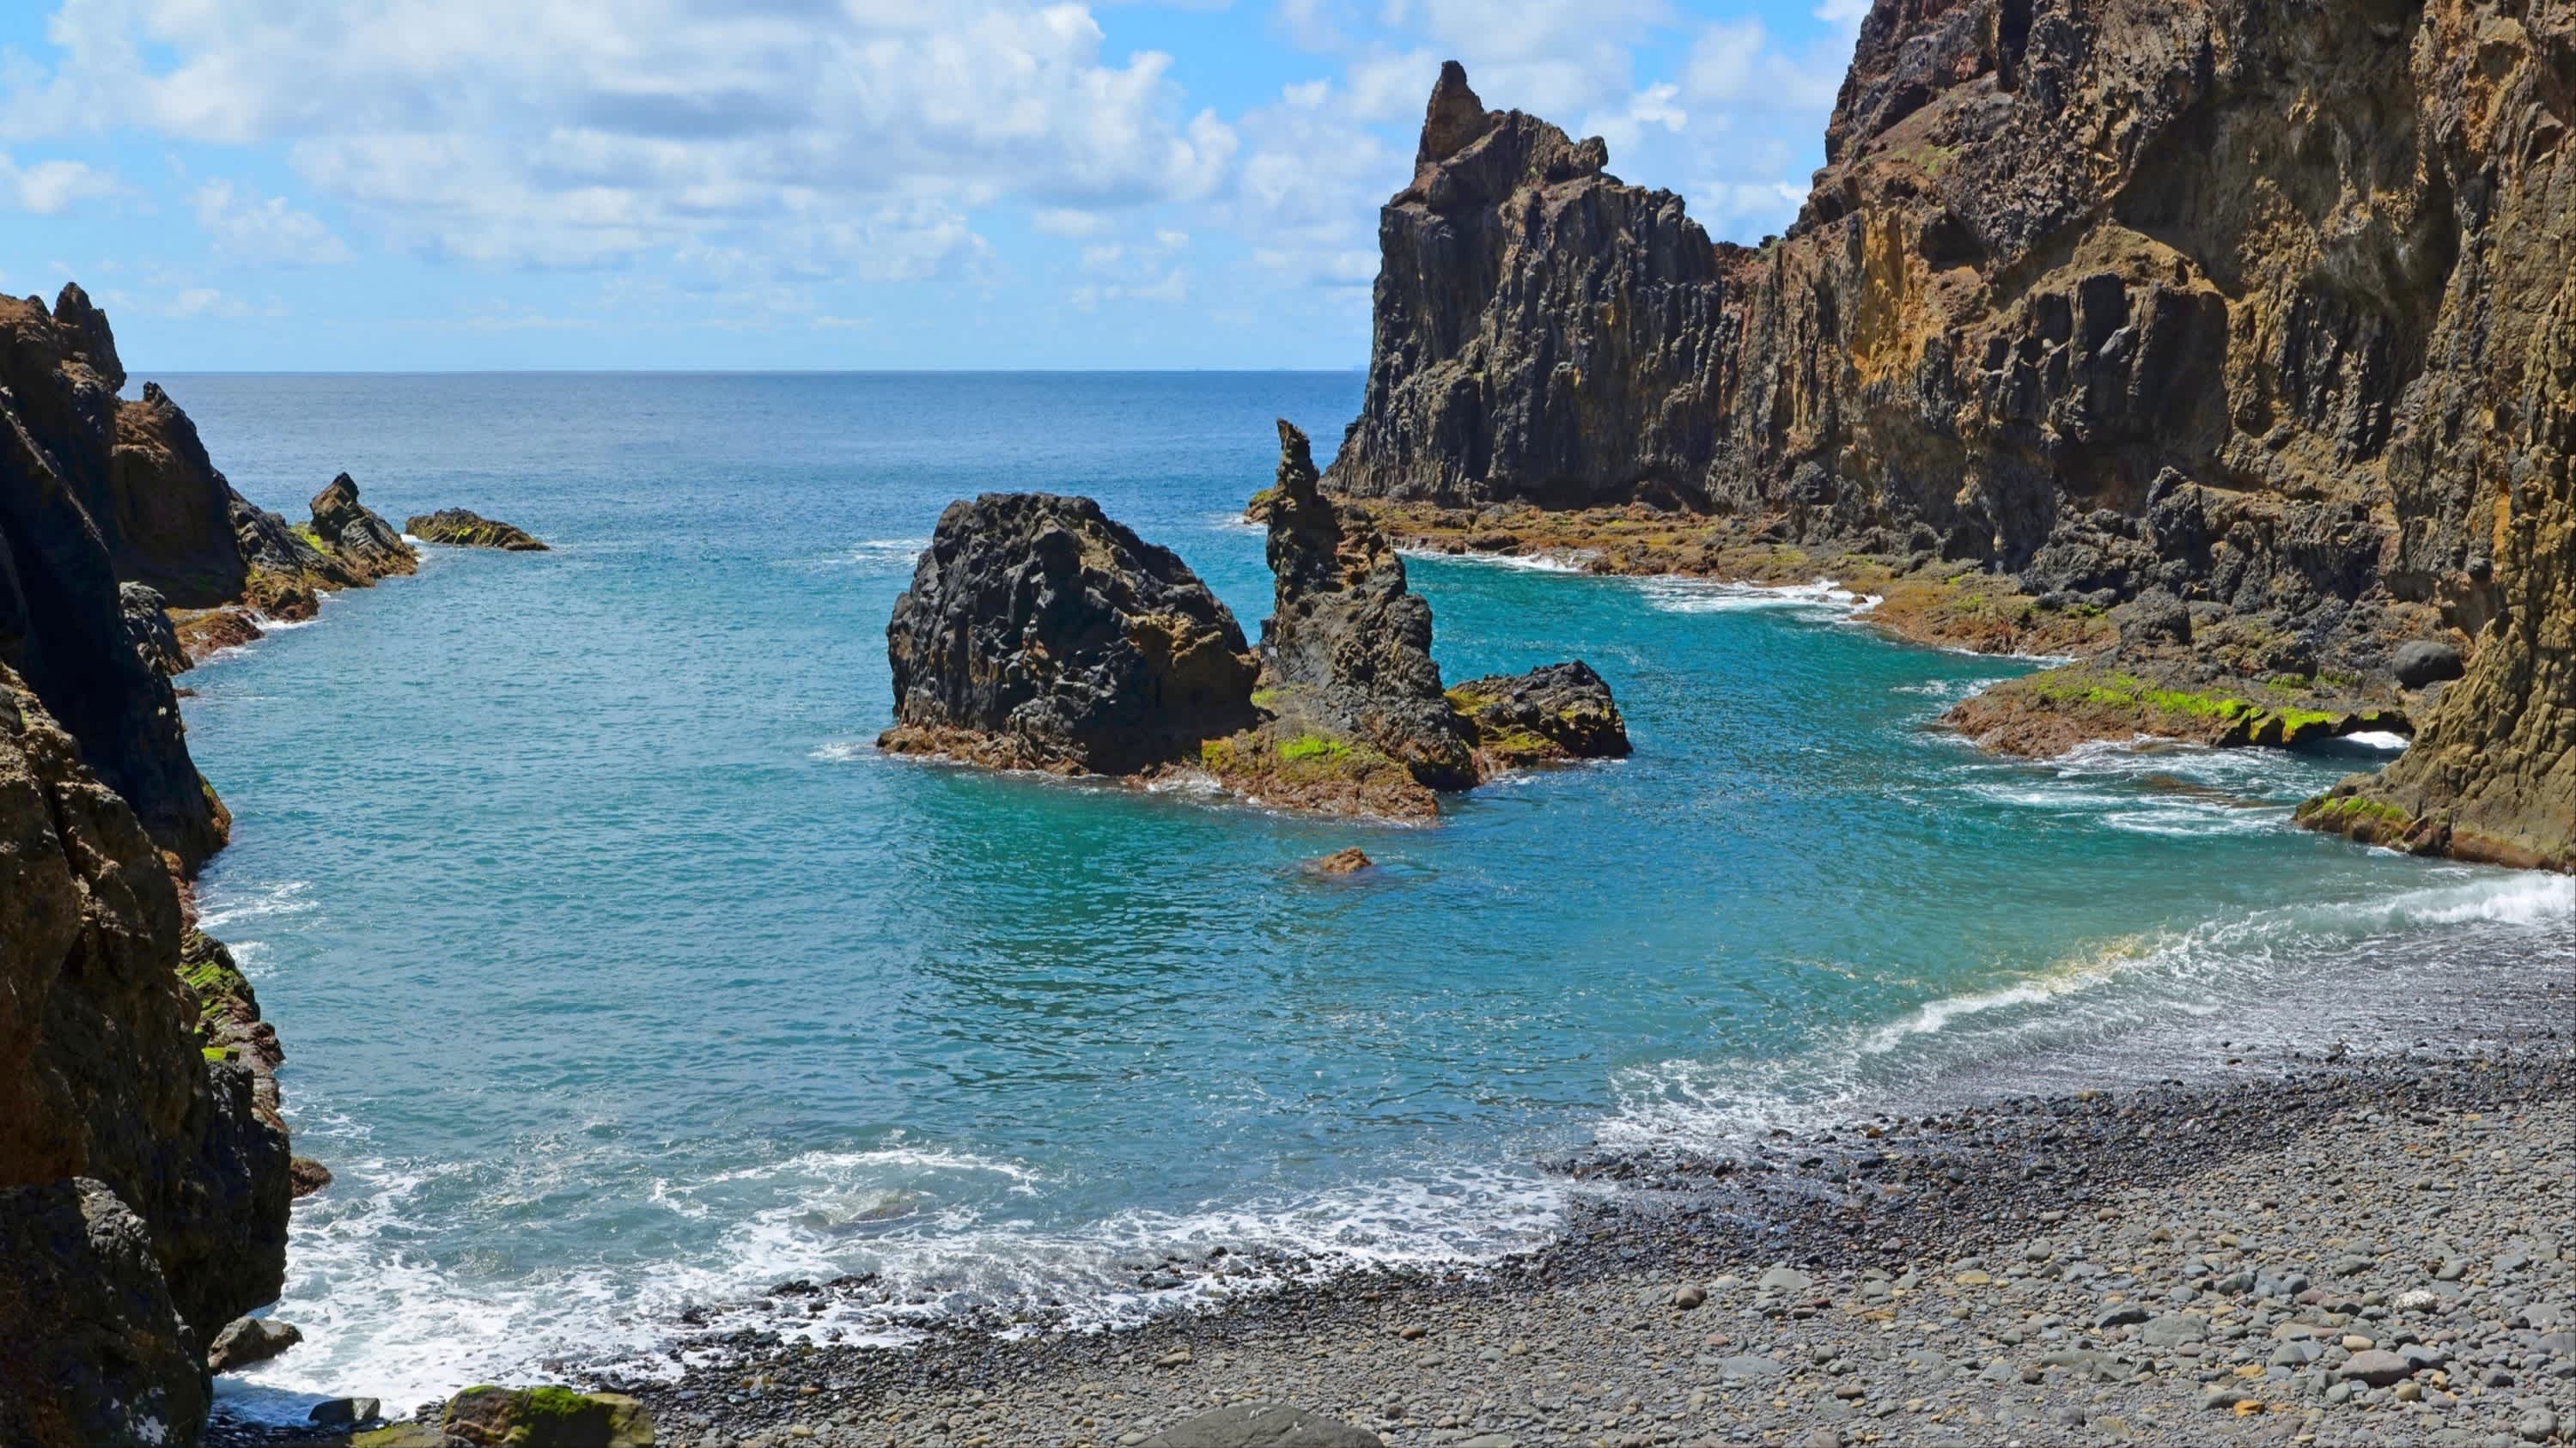 Petite plage de galets gris entourée de rochers au Portugal